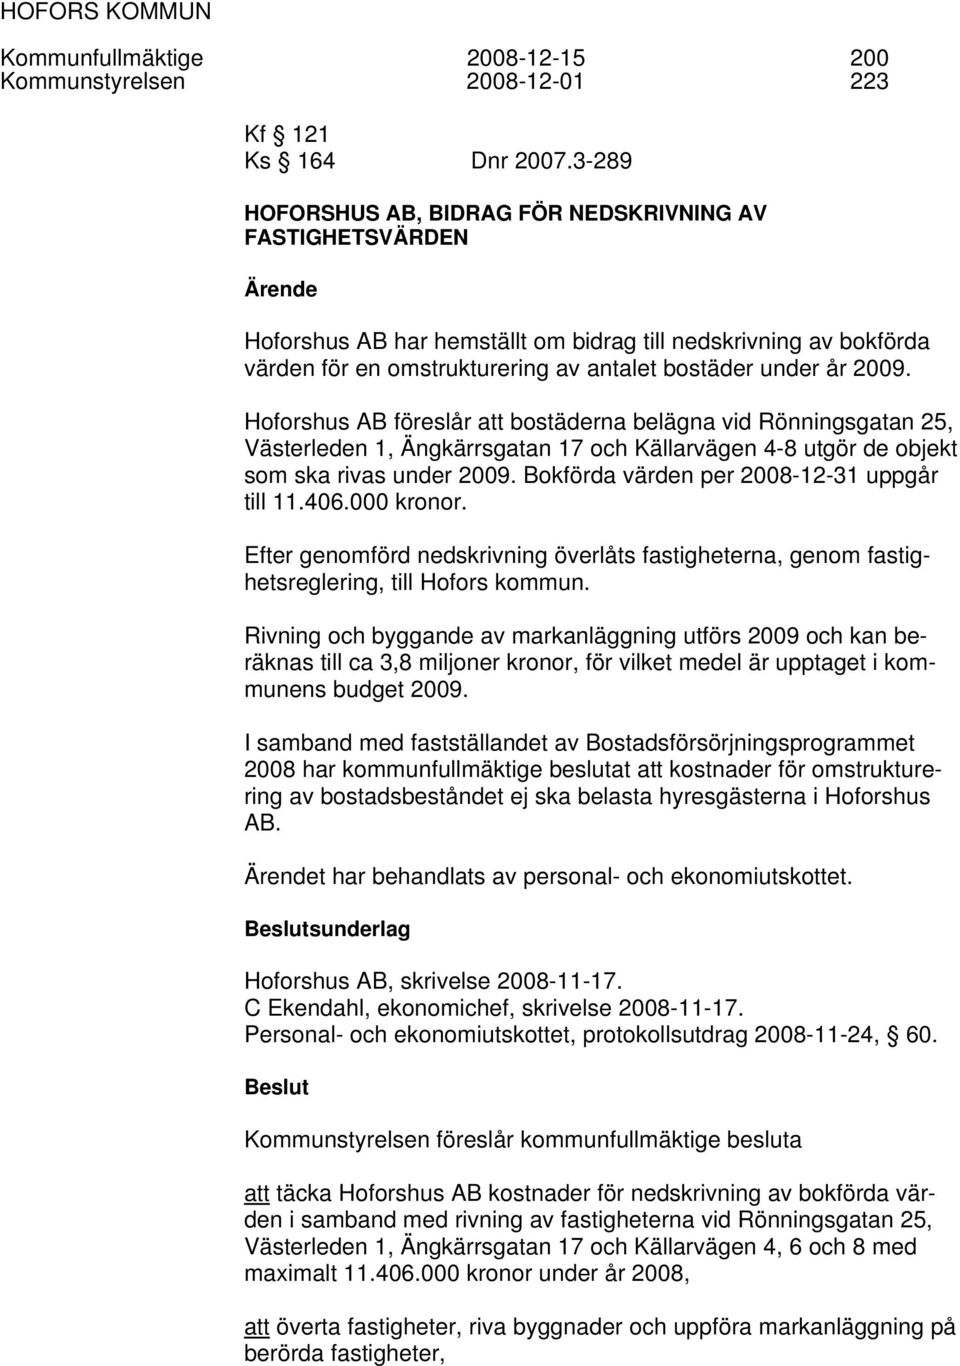 2009. Hoforshus AB föreslår att bostäderna belägna vid Rönningsgatan 25, Västerleden 1, Ängkärrsgatan 17 och Källarvägen 4-8 utgör de objekt som ska rivas under 2009.